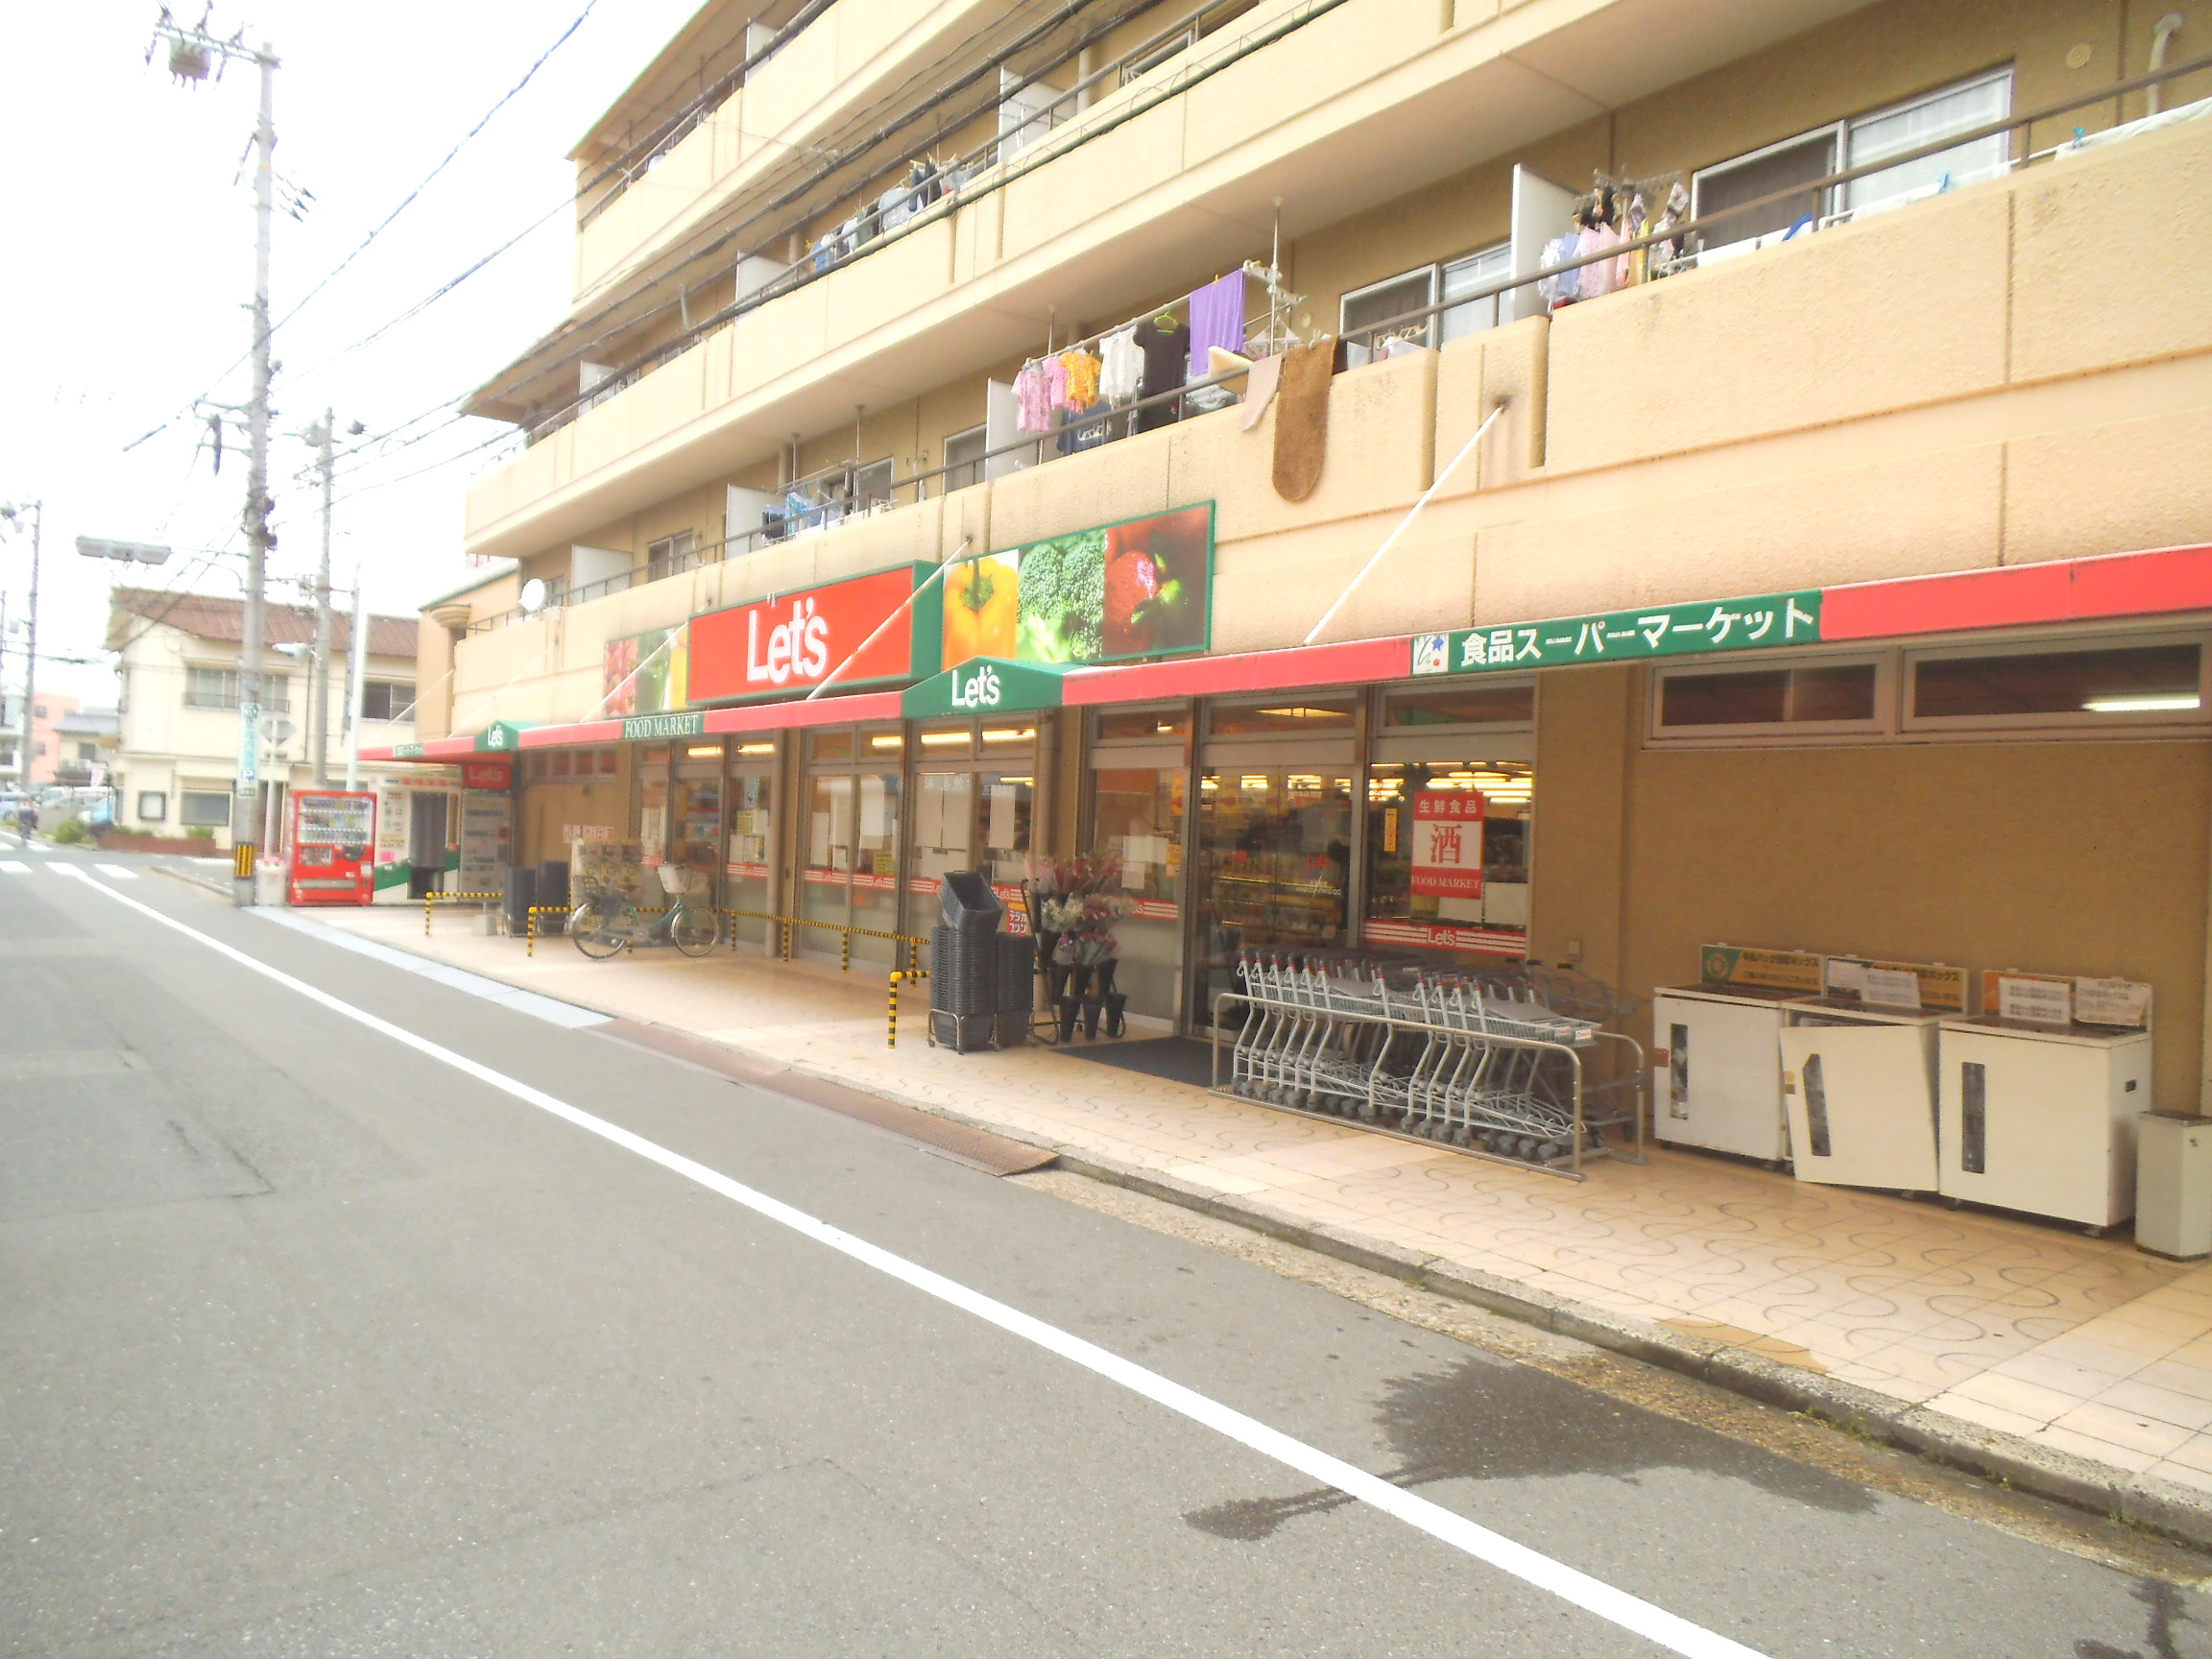 Supermarket. 600m to Let Nishiasahi Machiten (super)